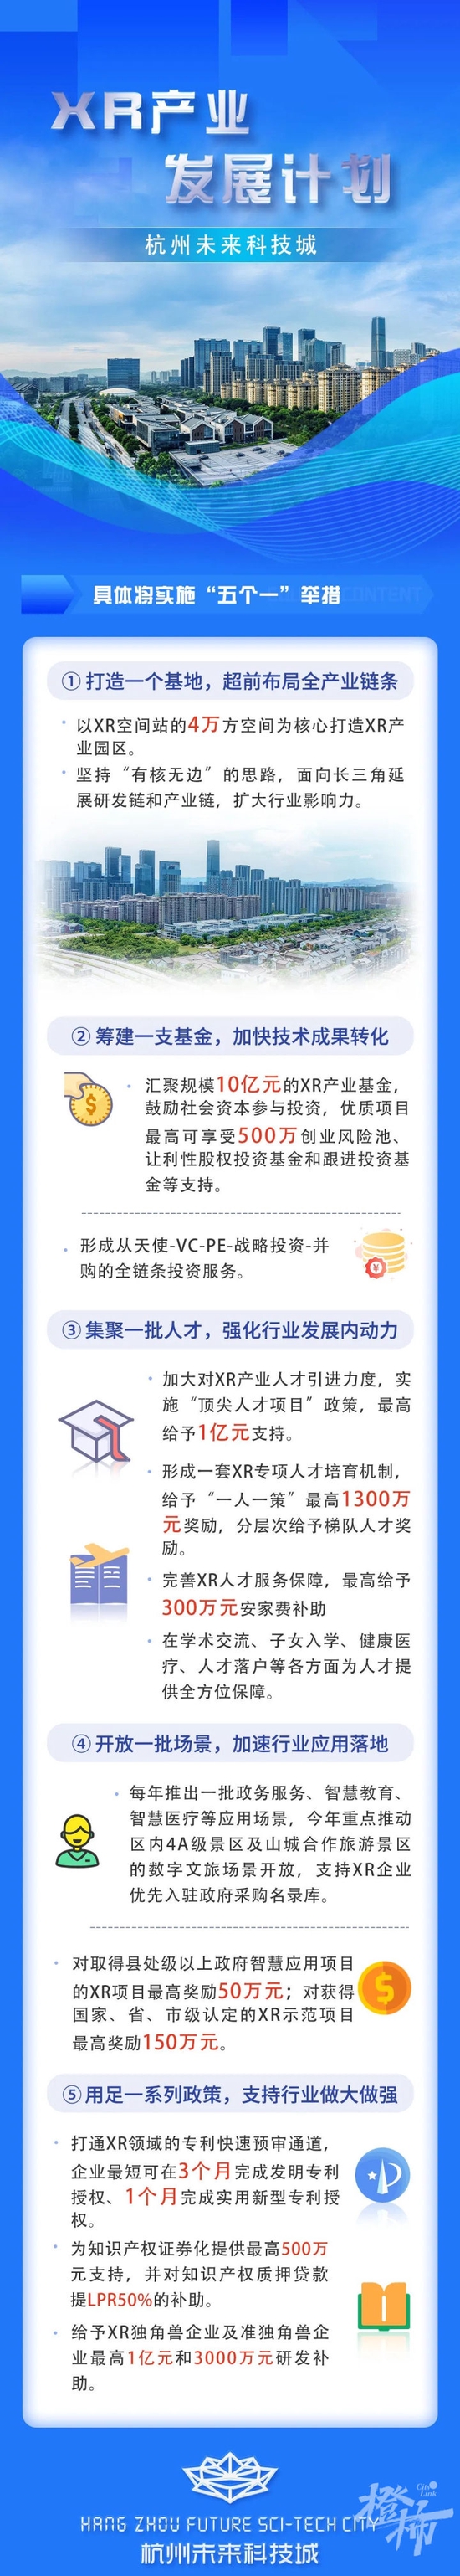 最高可获100000000元 杭州未来科技城发布XR产业计划